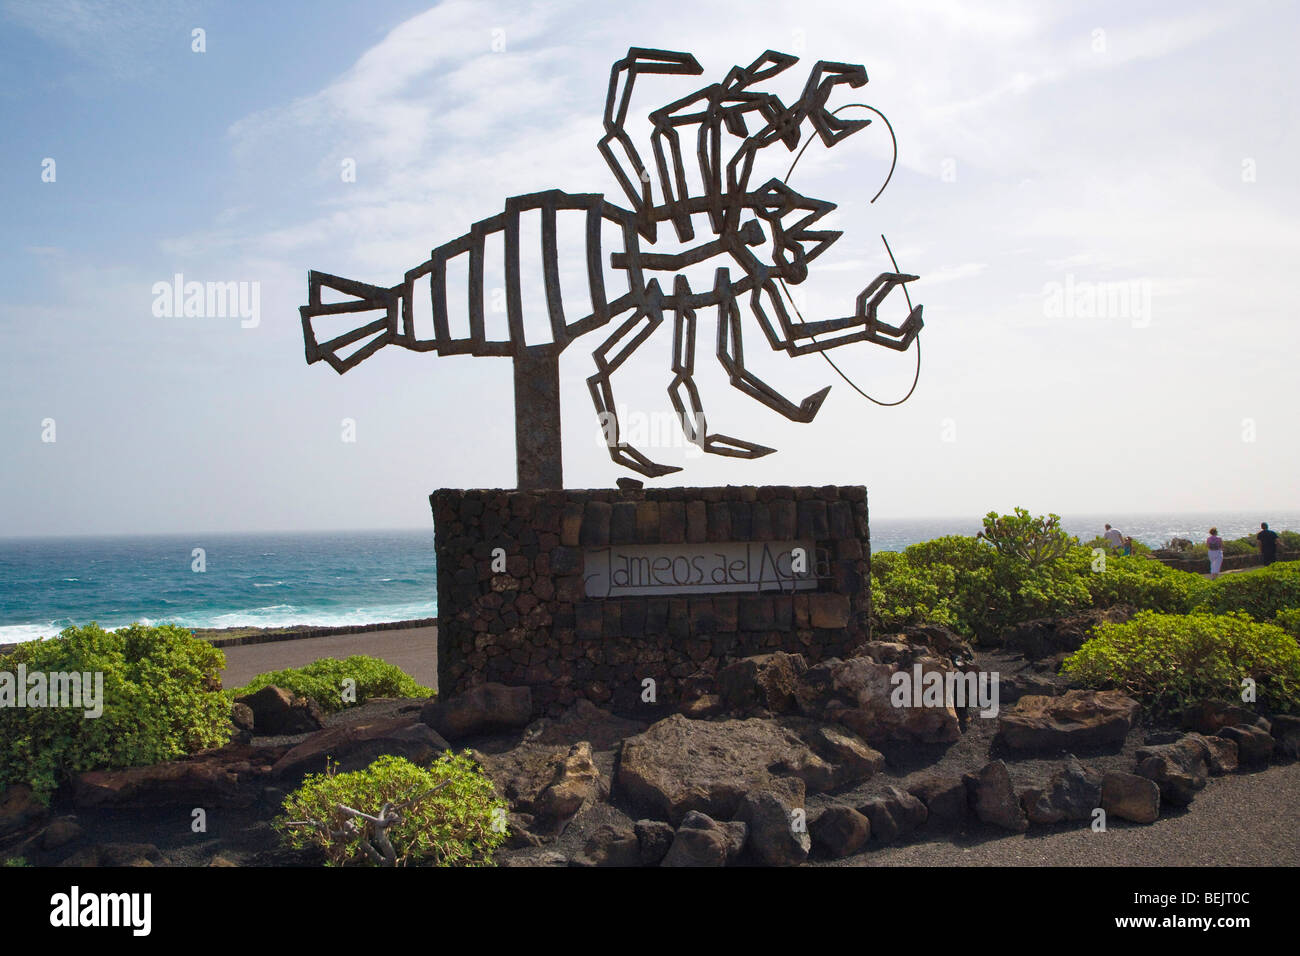 Escultura de un cangrejo diseñado por Cezar Manrique en Jameos del Agua, Lanzarote, Islas Canarias, España Foto de stock